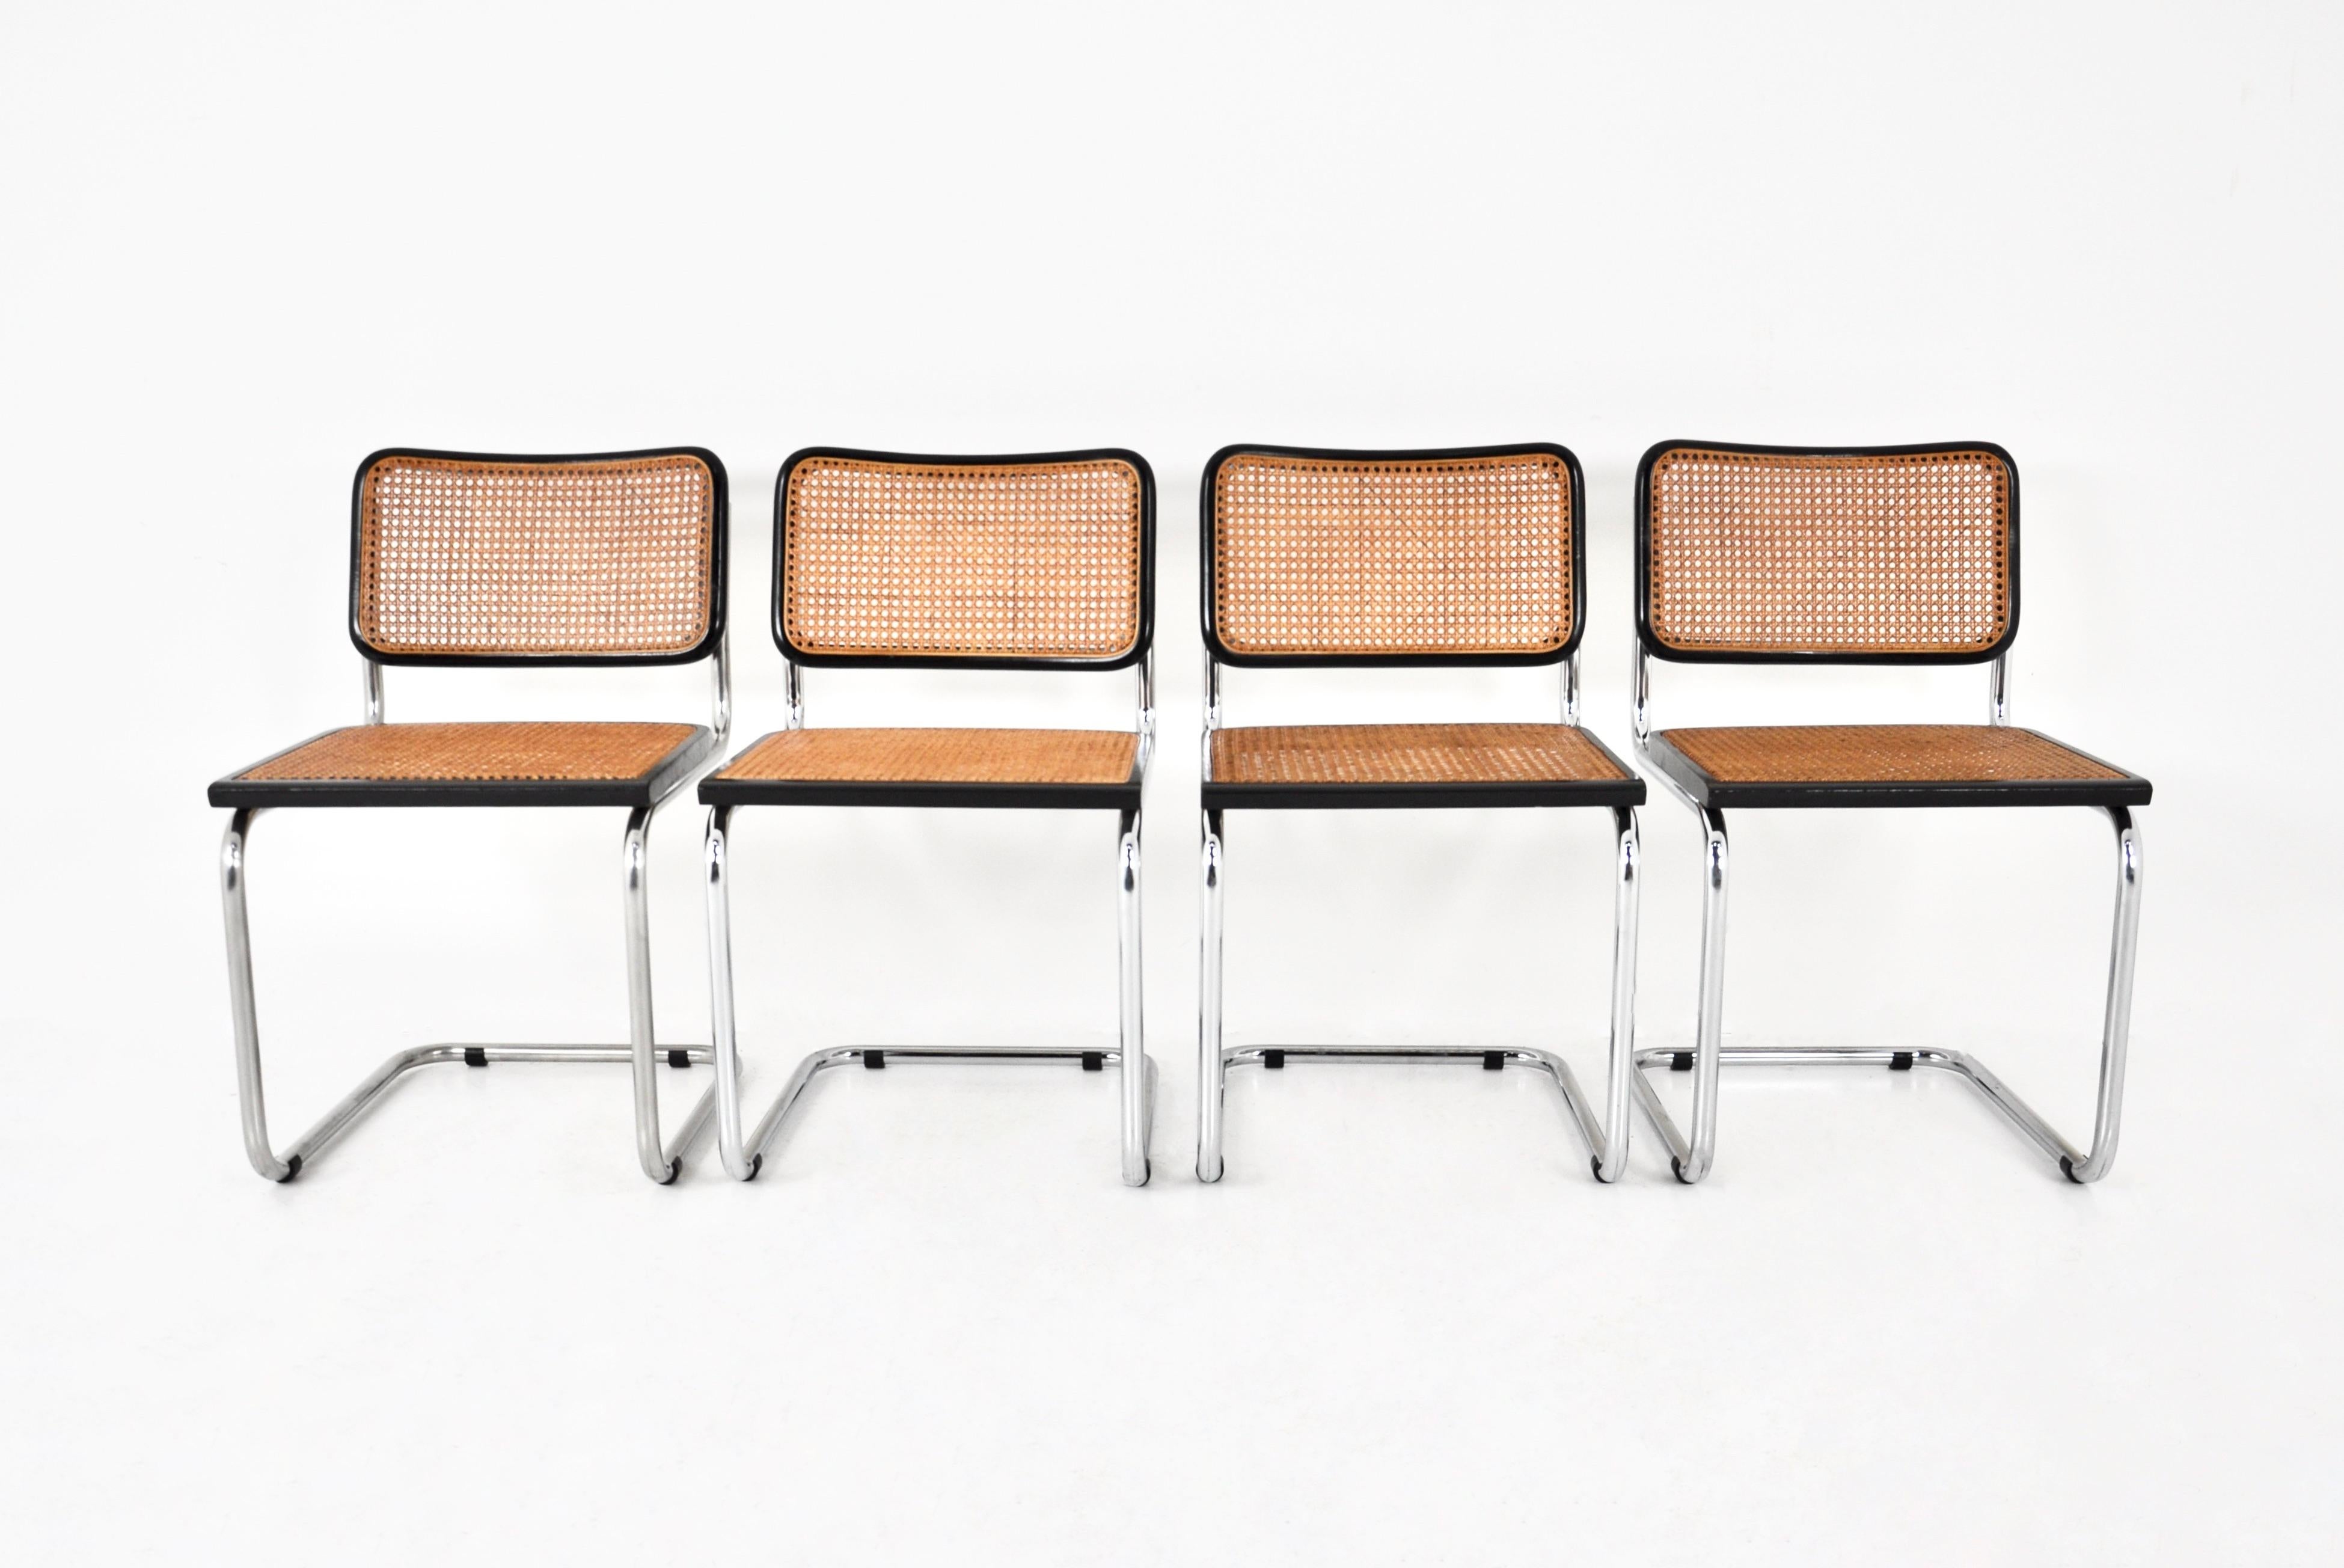 Set aus 4 Stühlen aus Holz, Rattan und Metall. Abmessungen: Sitzhöhe: 46 cm. Abnutzung durch die Zeit und das Alter der Stühle.